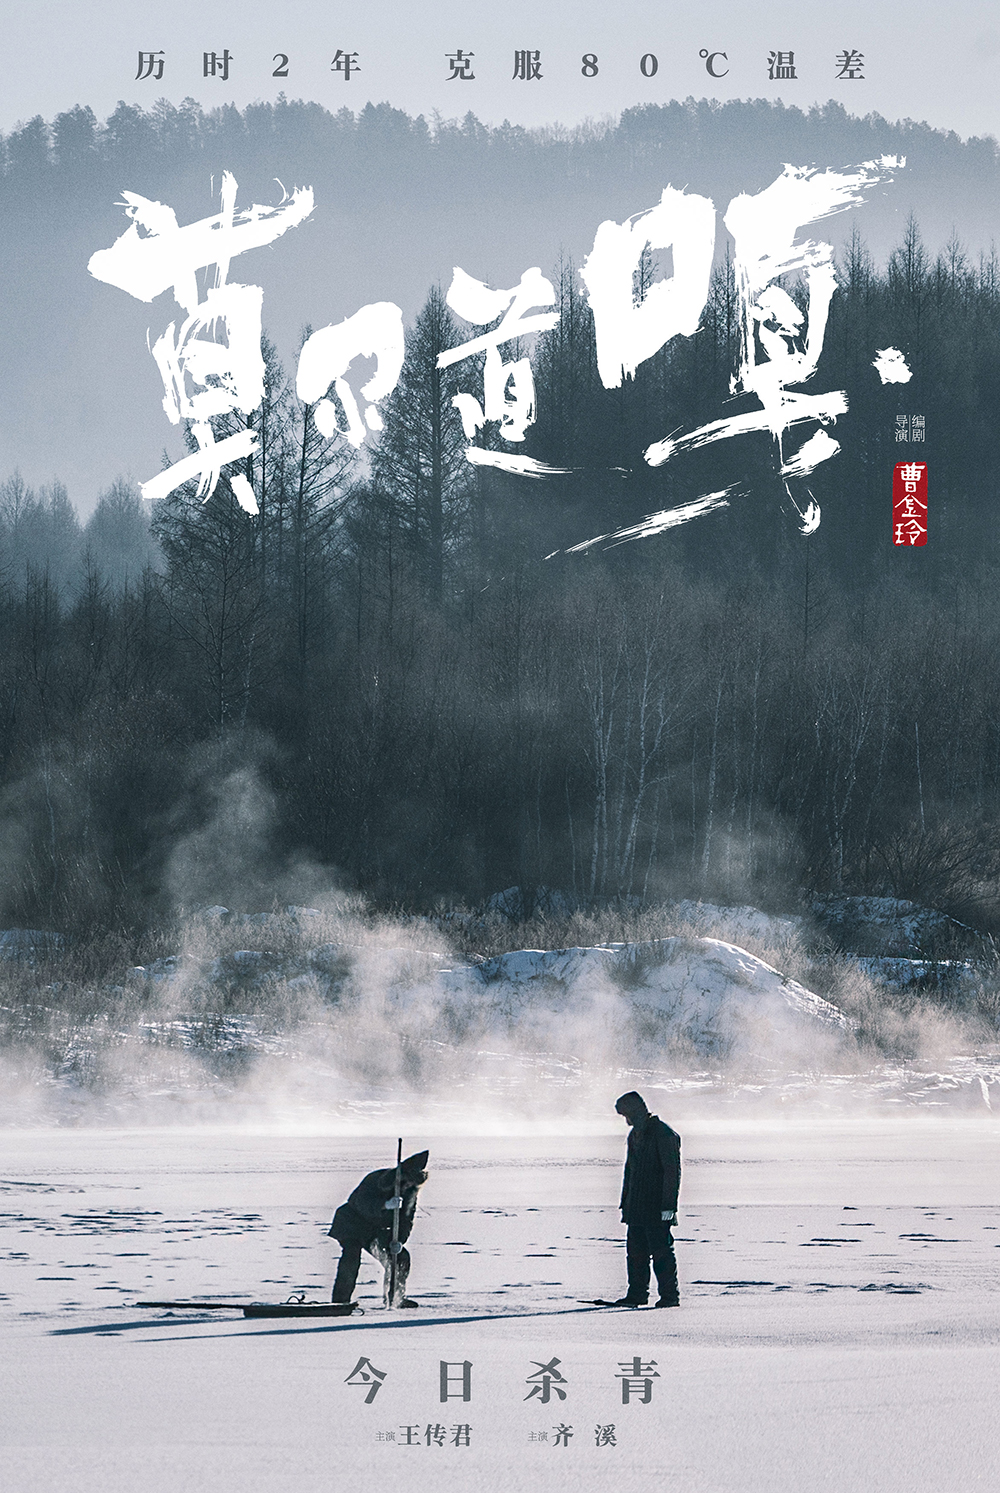 历经两年 电影《莫尔道嘎》正式杀青 横跨四季 王传君齐溪深入秘境